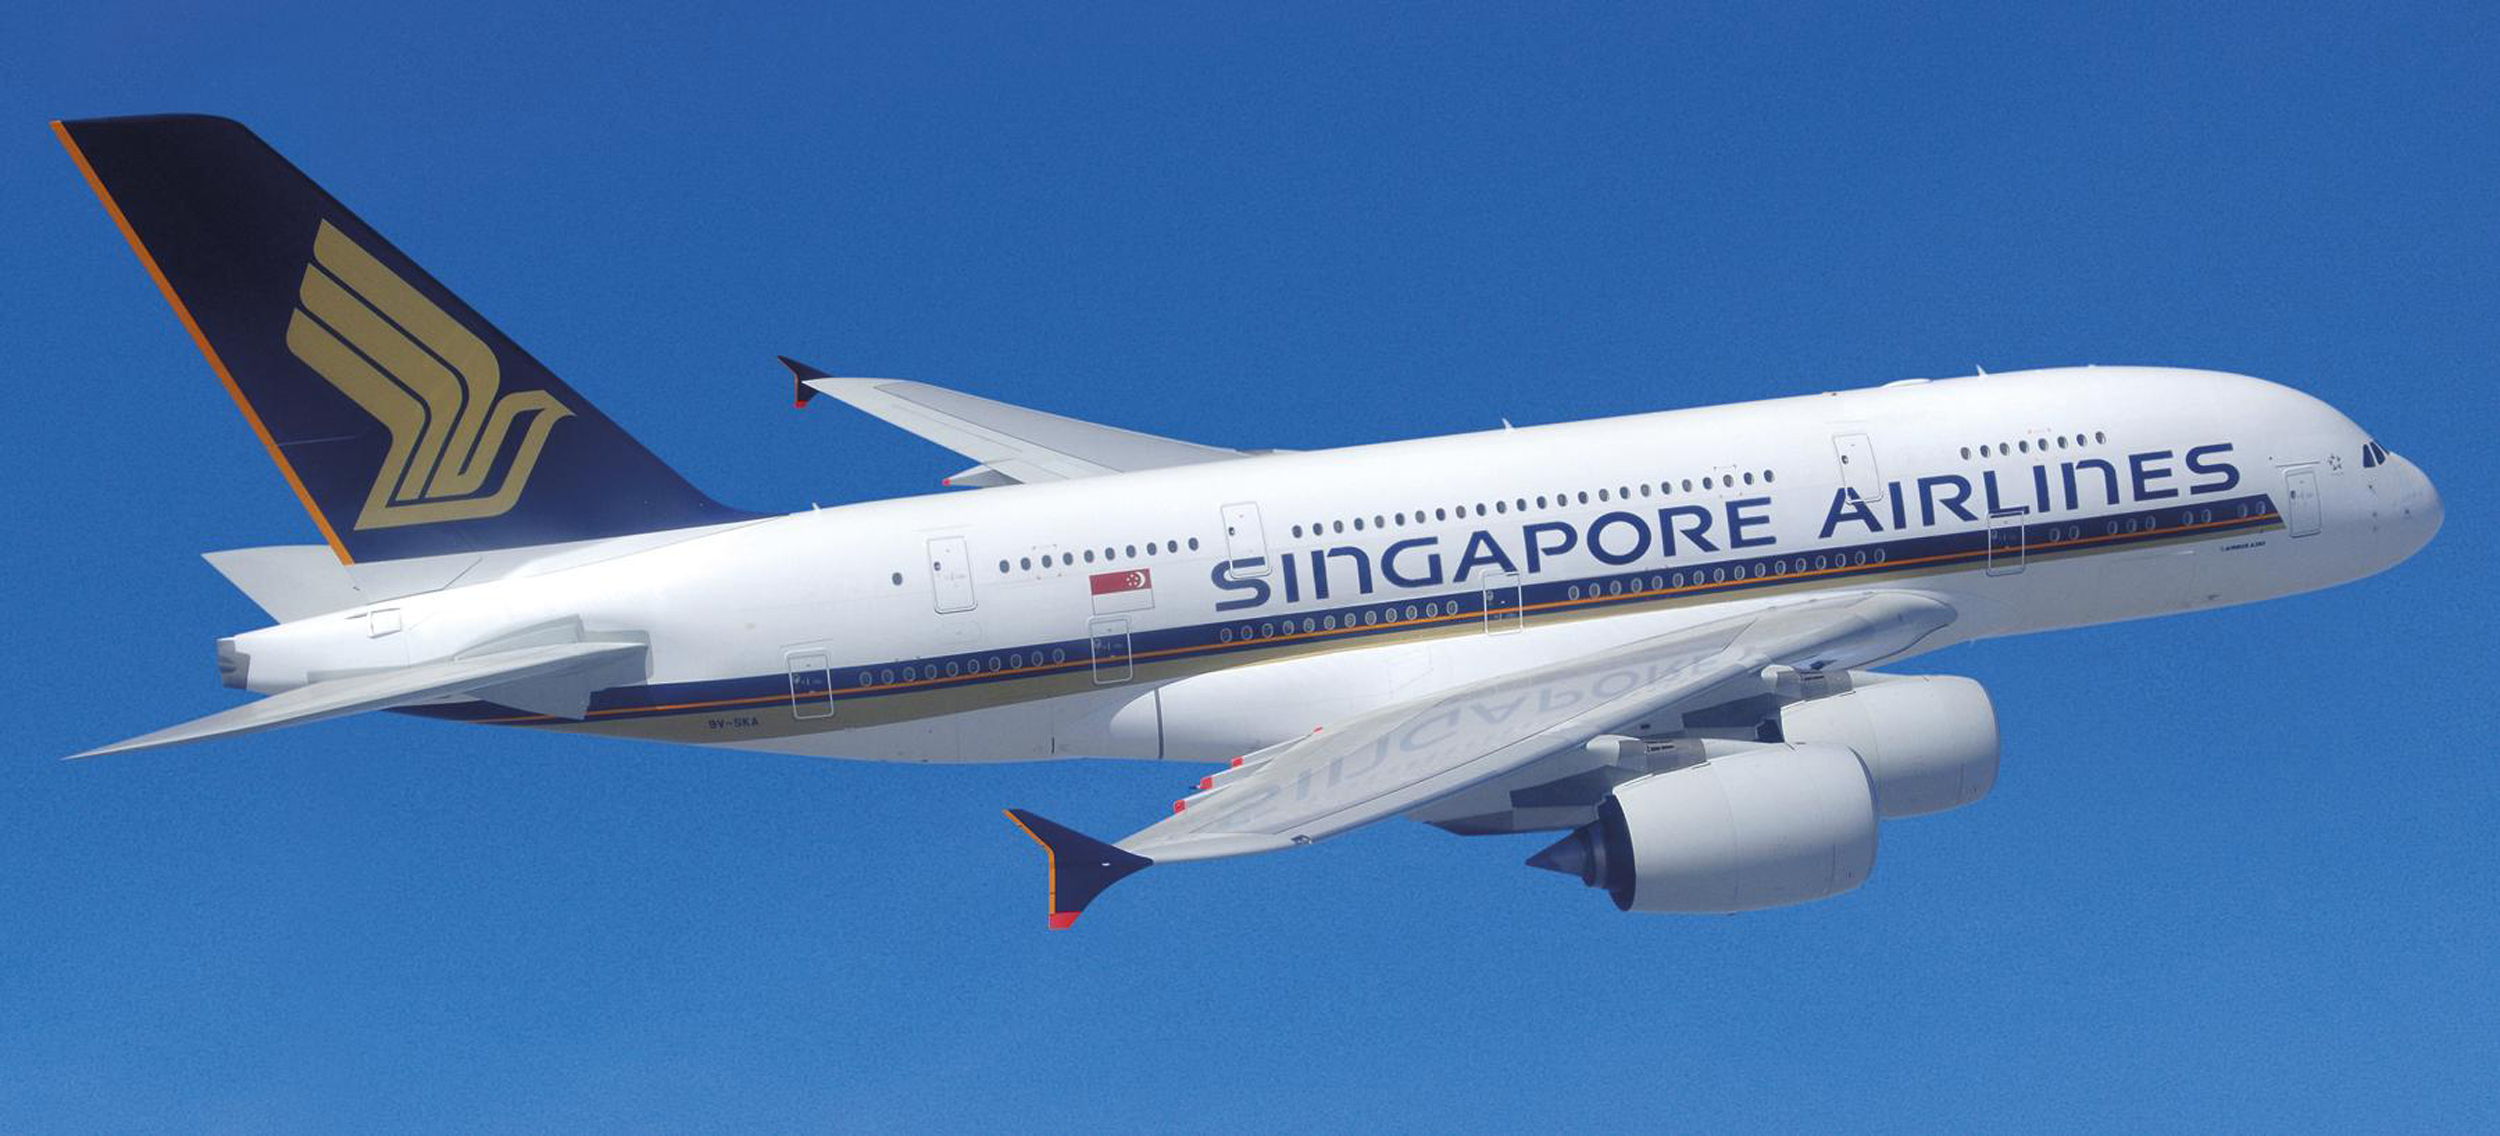 singapore airlines airbus